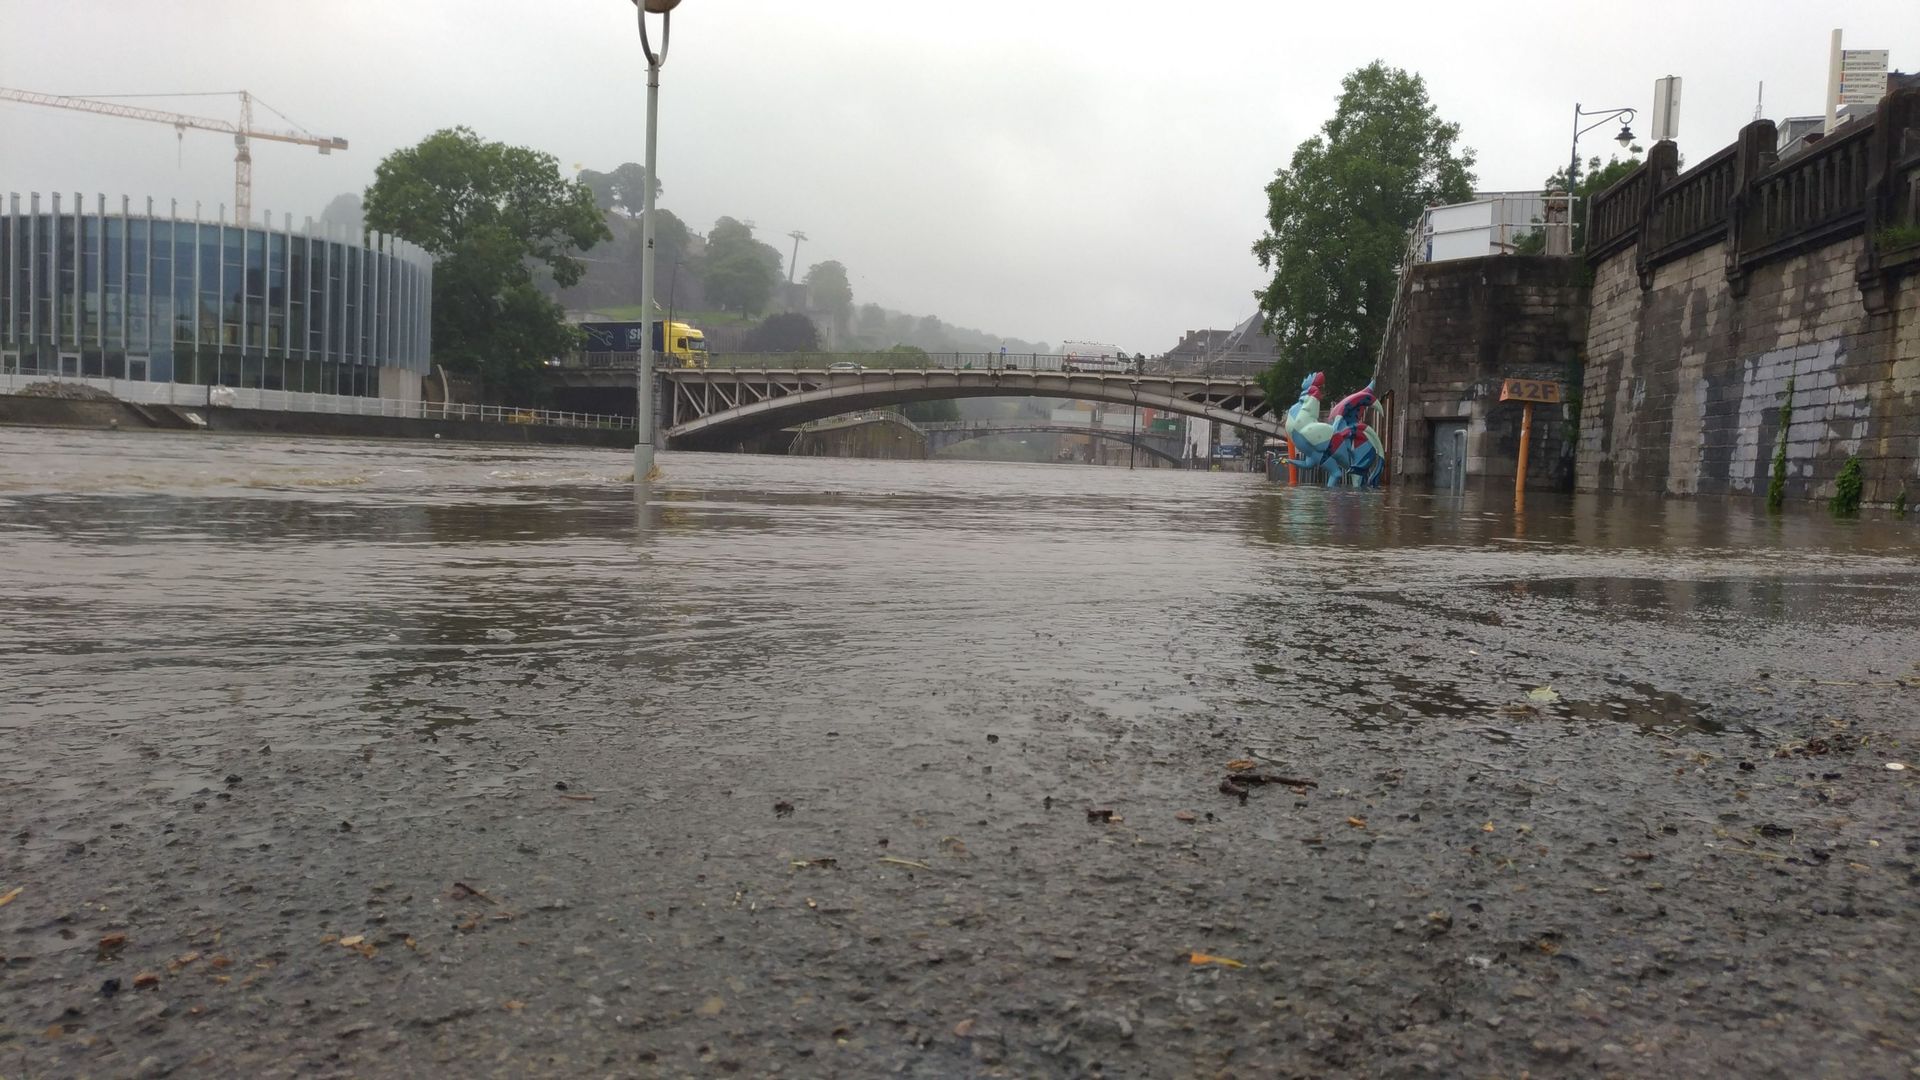 Inondations à Namur : les riverains en bord de Meuse et Sambre invités à quitter leur logement, le niveau devrait monter d'1 à 1.5m